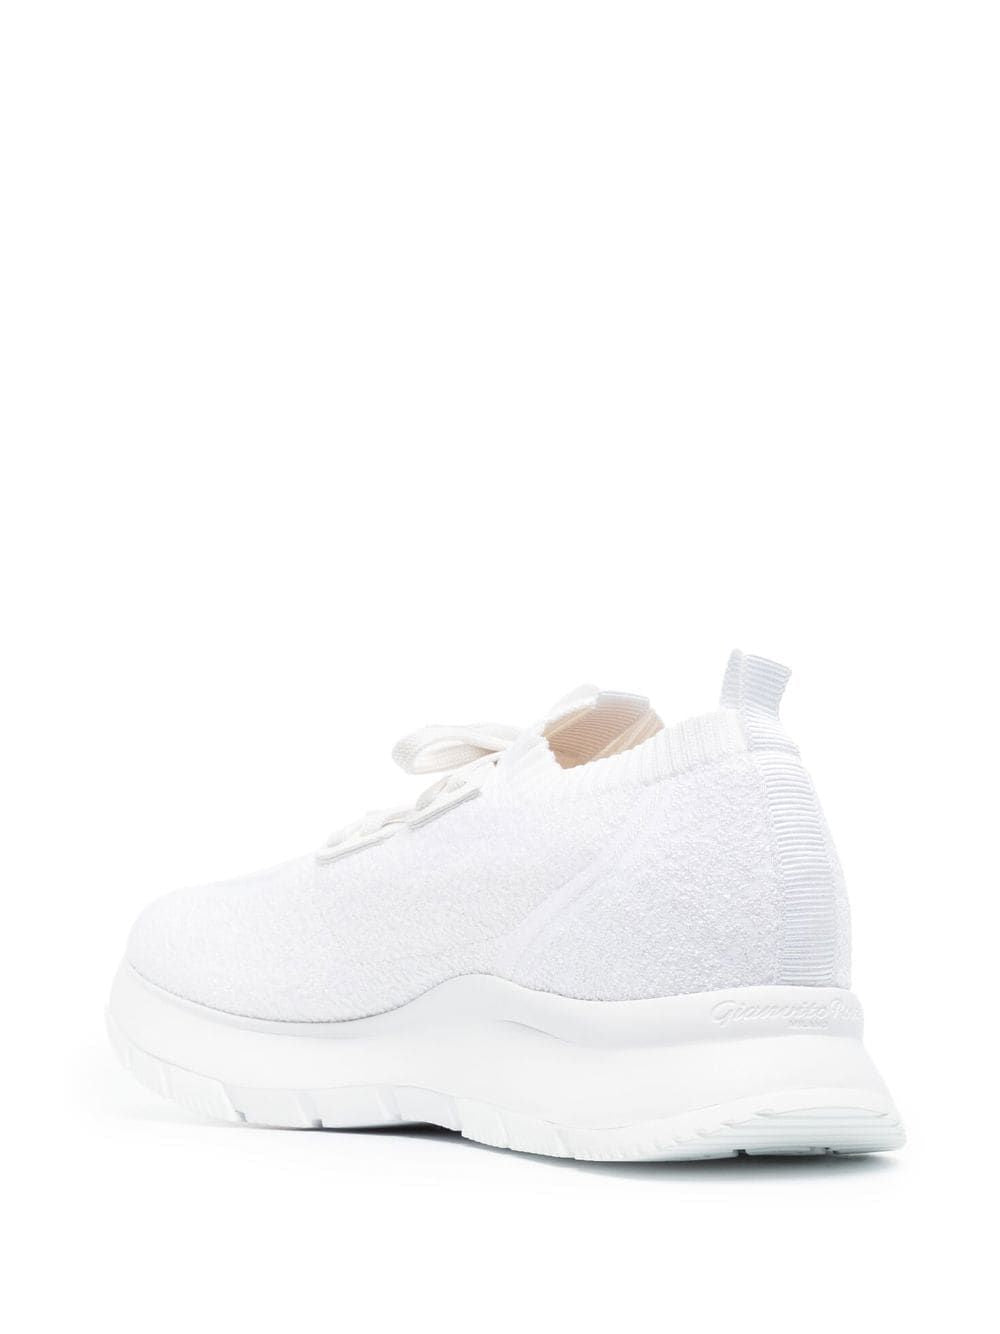 女士白色運動鞋 - FW22系列